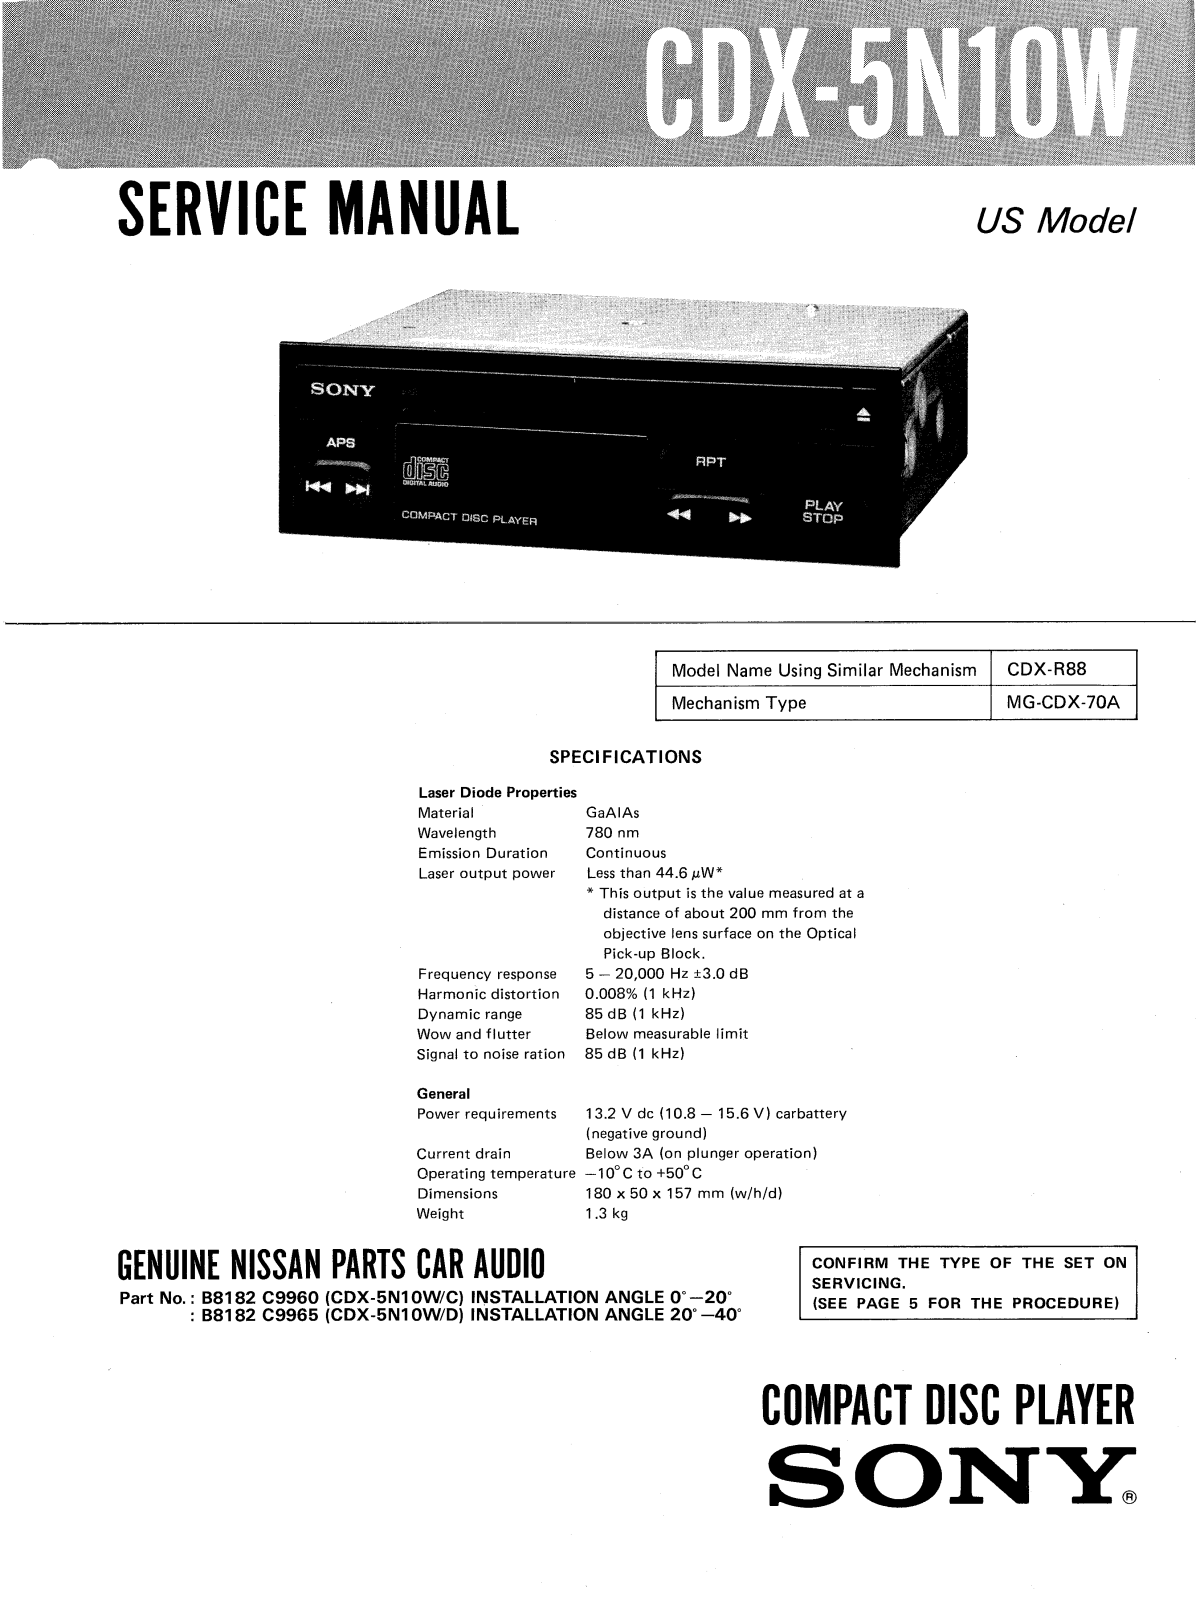 Sony CDX-5N10W Service Manual